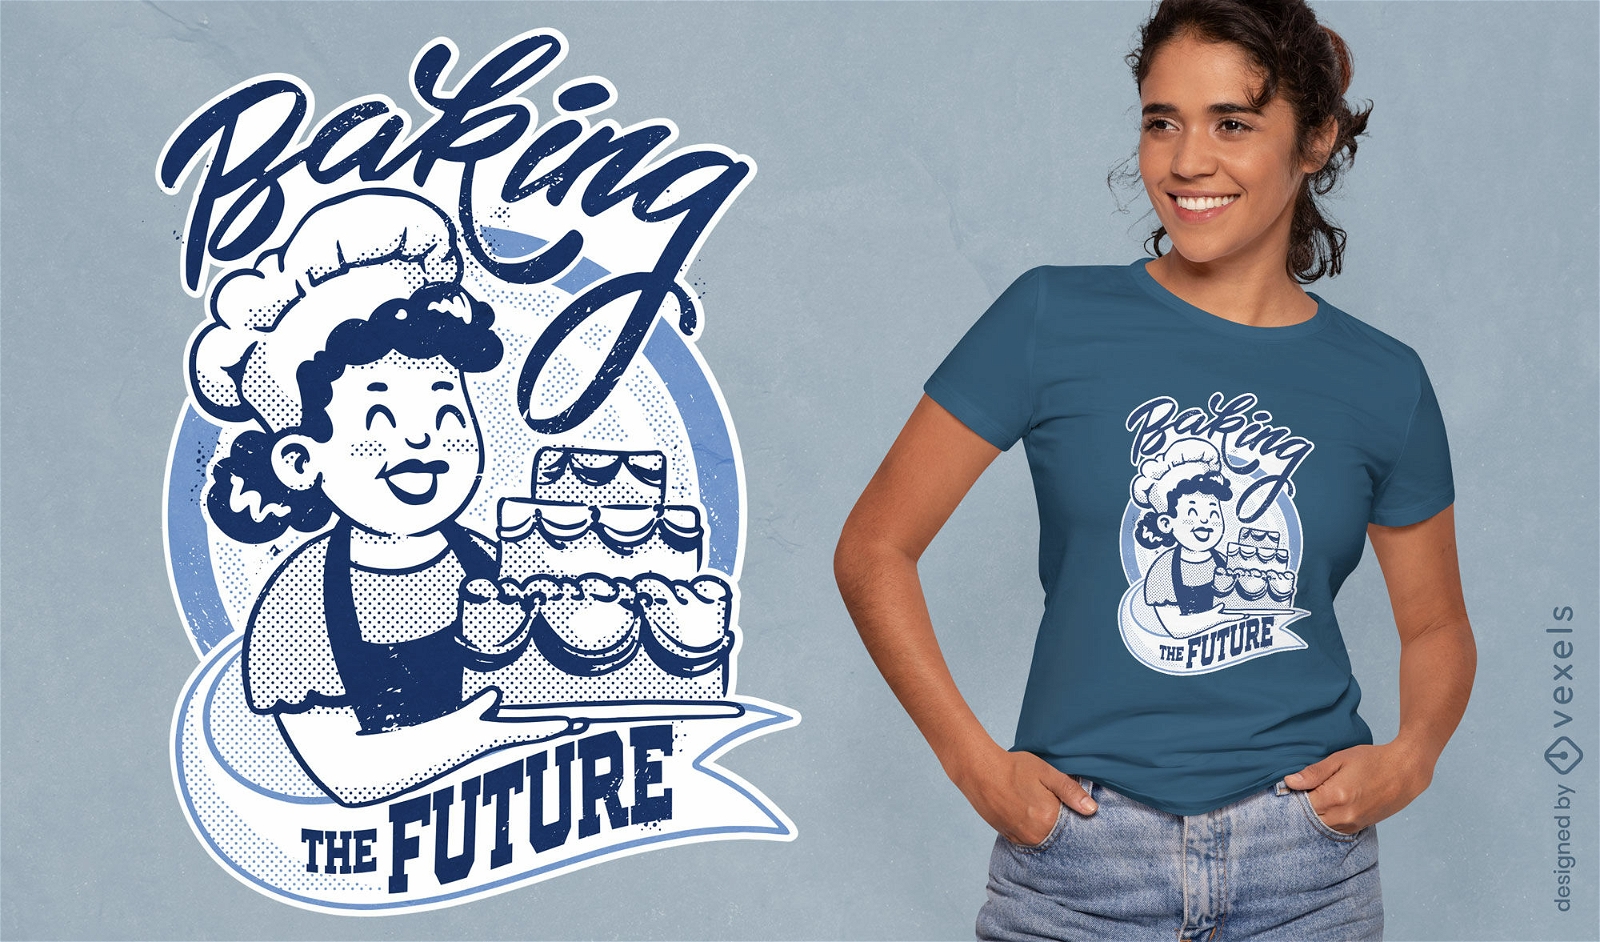 Baking the future retro cartoon quote t-shirt design